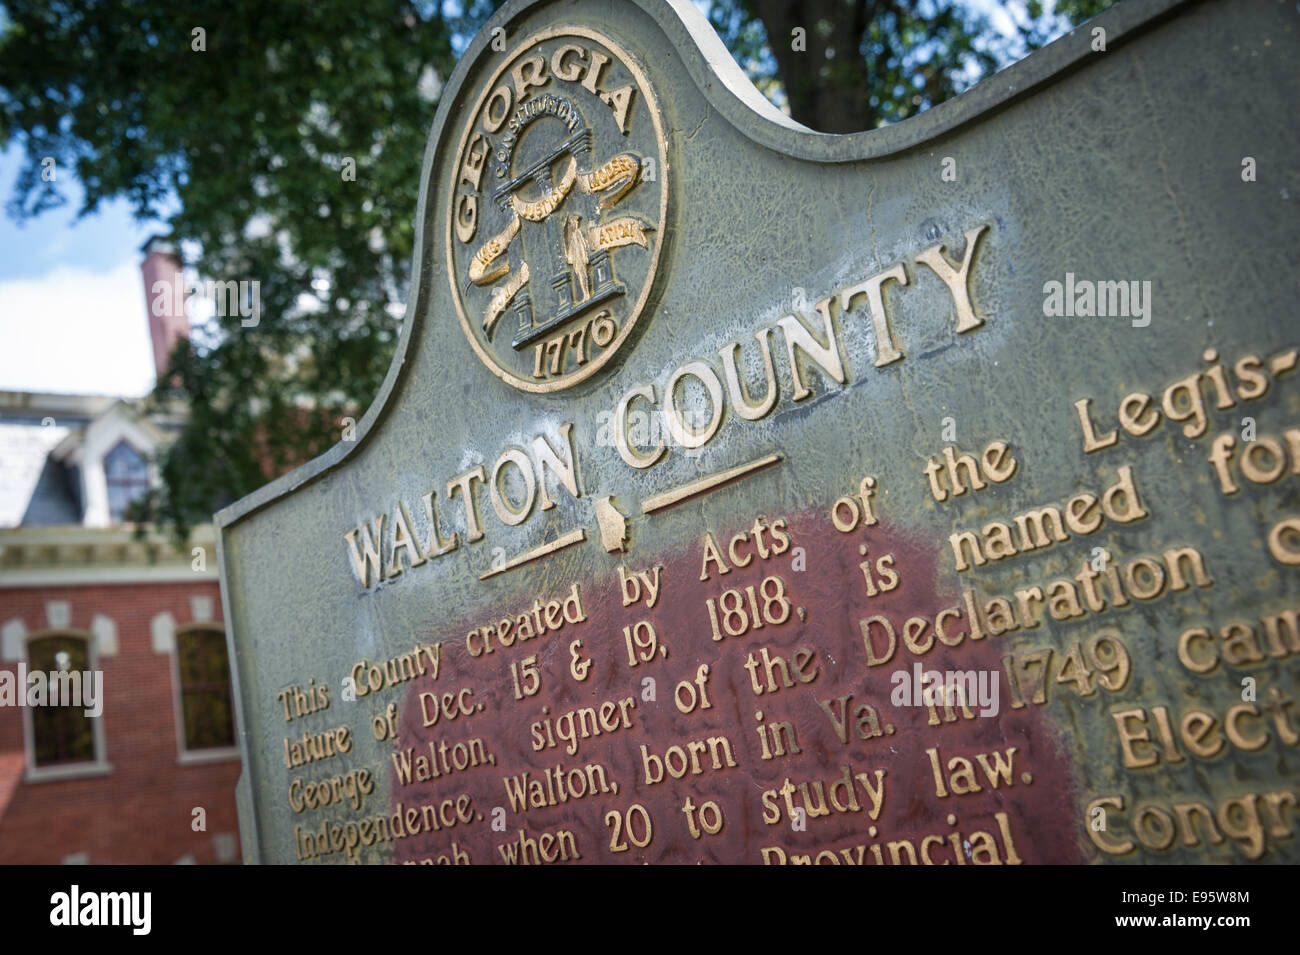 Walton County, Georgia historische Markierung am Walton County historischen Gerichtsgebäude auf dem Marktplatz in Monroe, Georgia, USA. Stockfoto